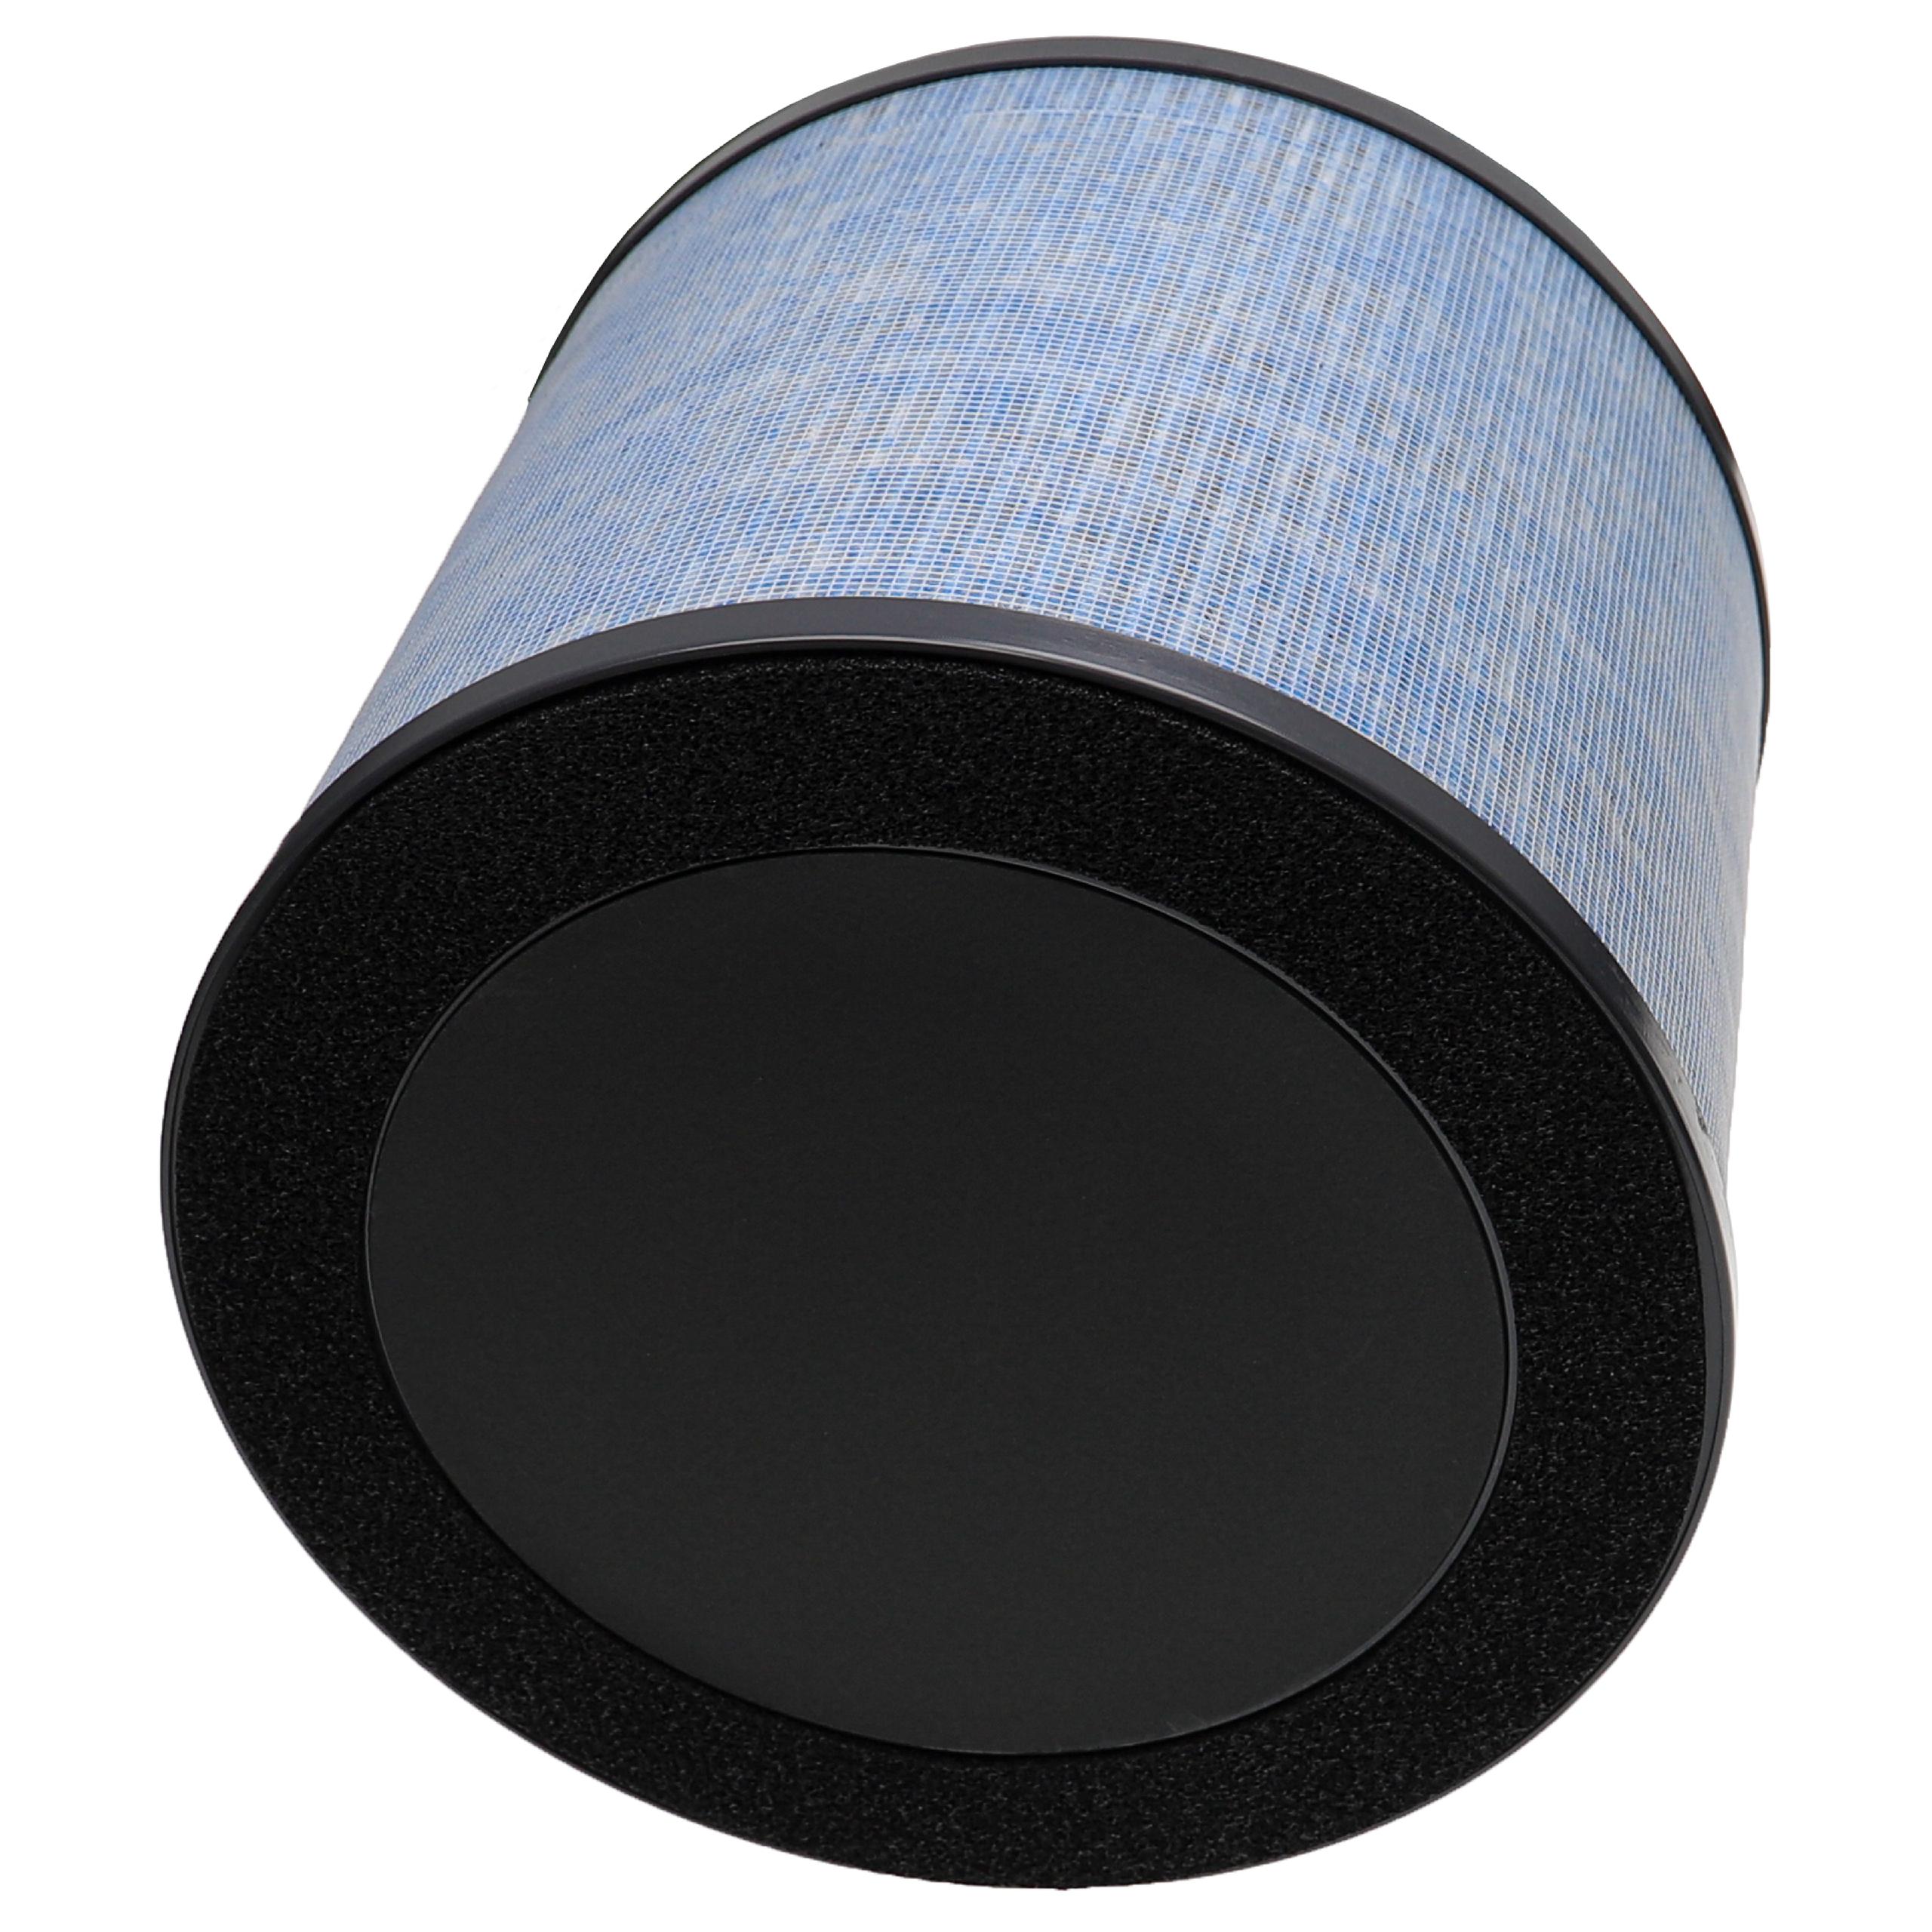 Luftreiniger-Filter als Ersatz für Comedes PT94101 - Kombi-Vorfilter+Hepa+Aktivkohle